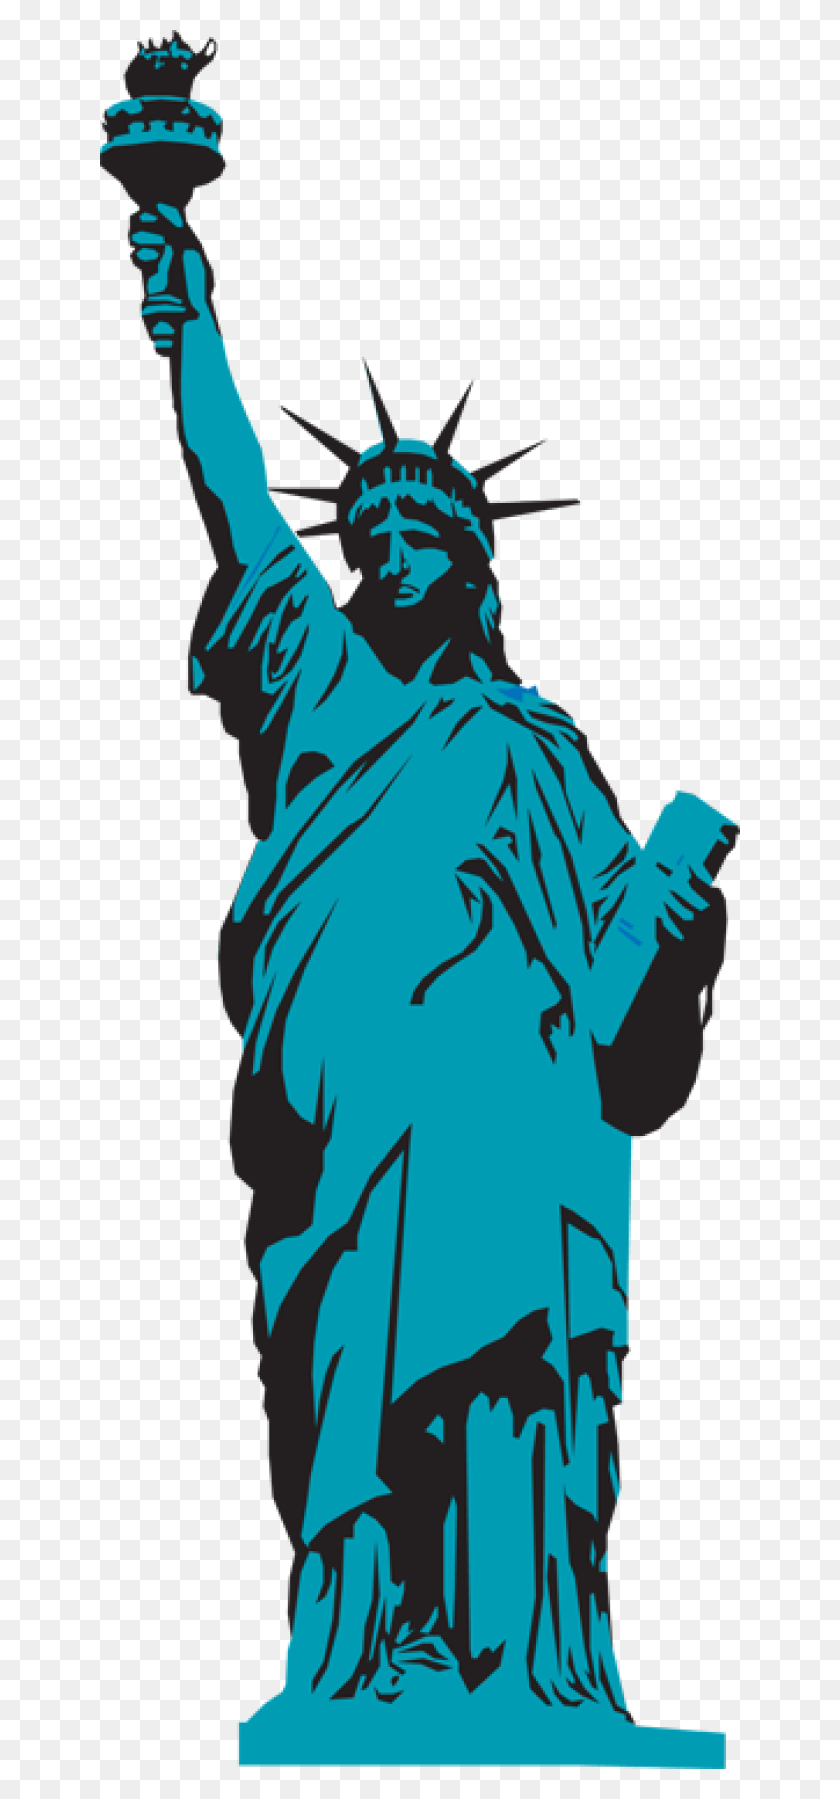 640x1739 Клипарт Статуя Свободы Смотреть На Статую Свободы Картинки - Сердце, Вырезанное В Дереве Клипарт